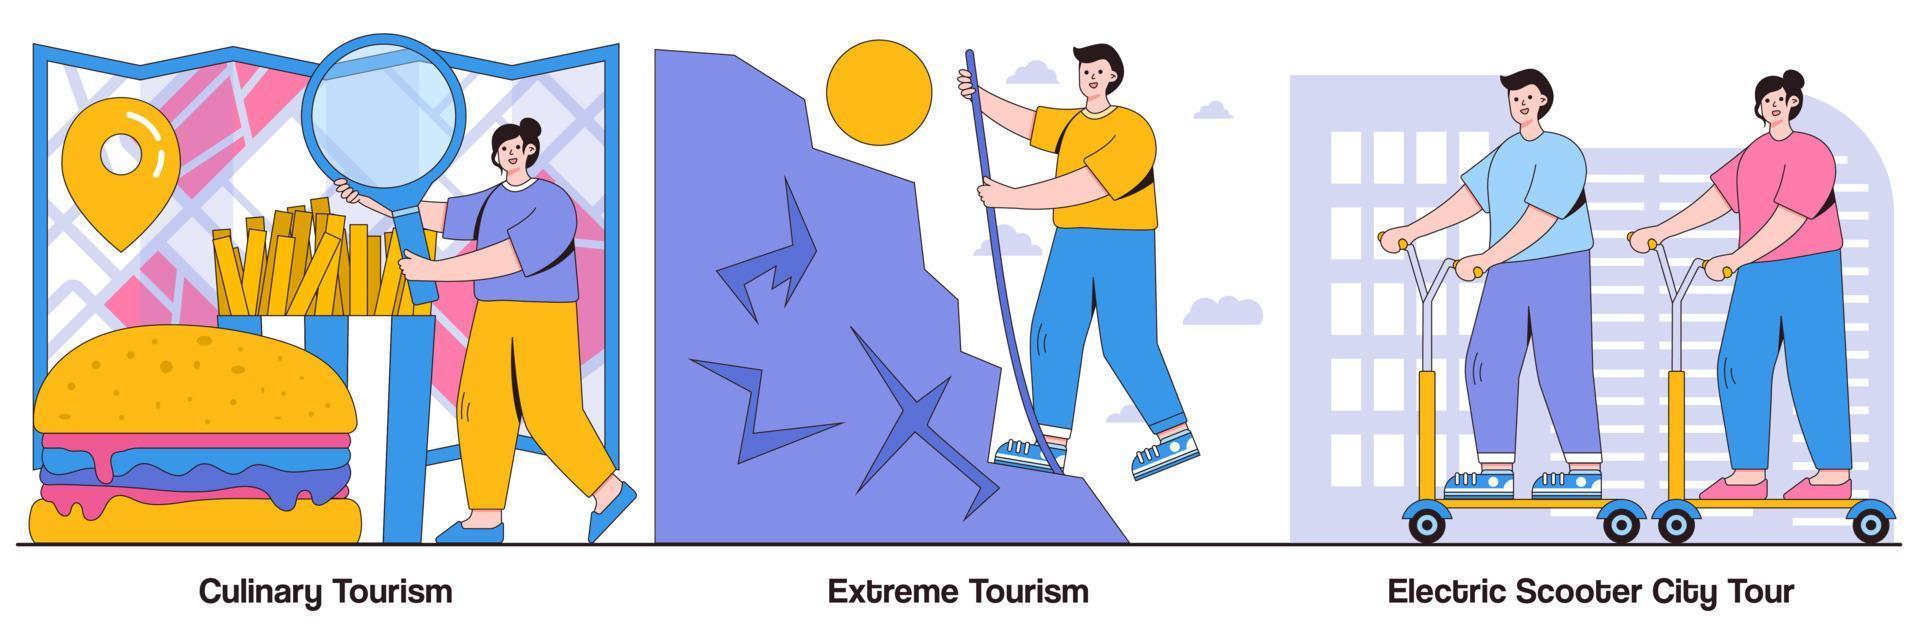 kulinarischer tourismus, extremer tourismus, elektroroller-stadtrundfahrt mit illustrationspaket für personen vektor